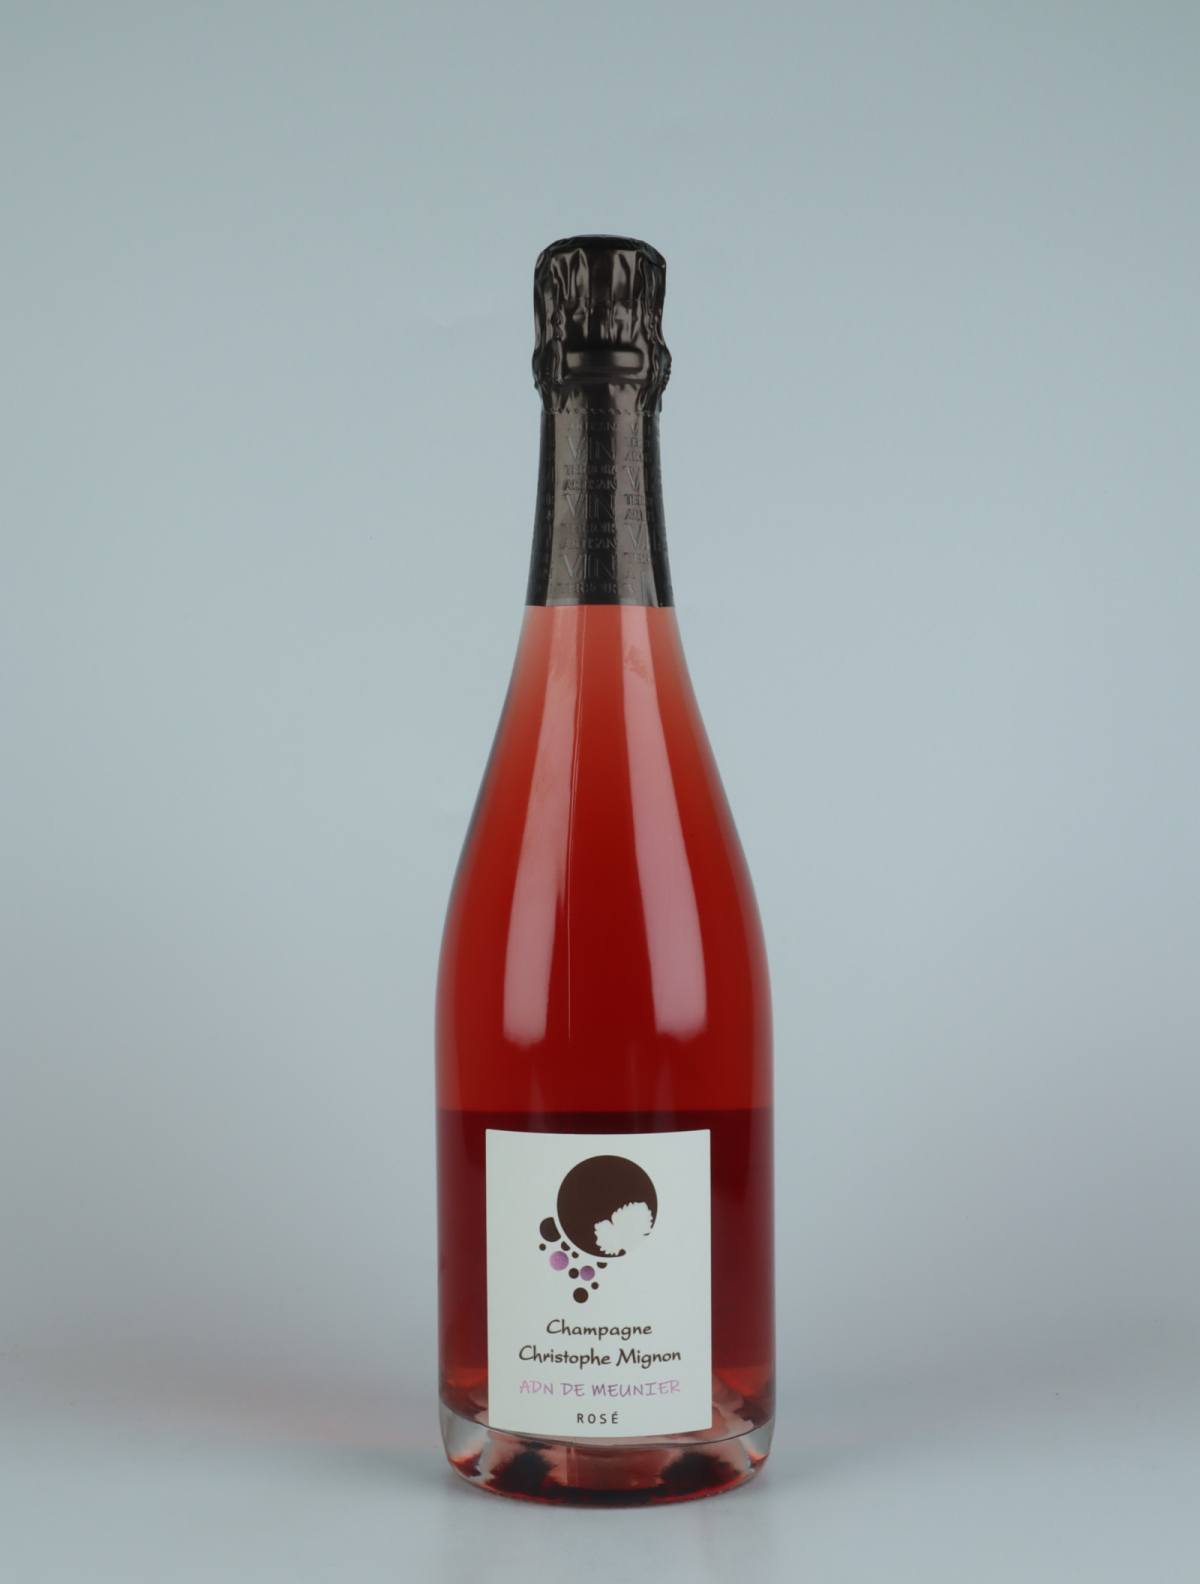 En flaske N.V. ADN de Meunier Rose Extra Brut Mousserende fra Christophe Mignon, Champagne i Frankrig